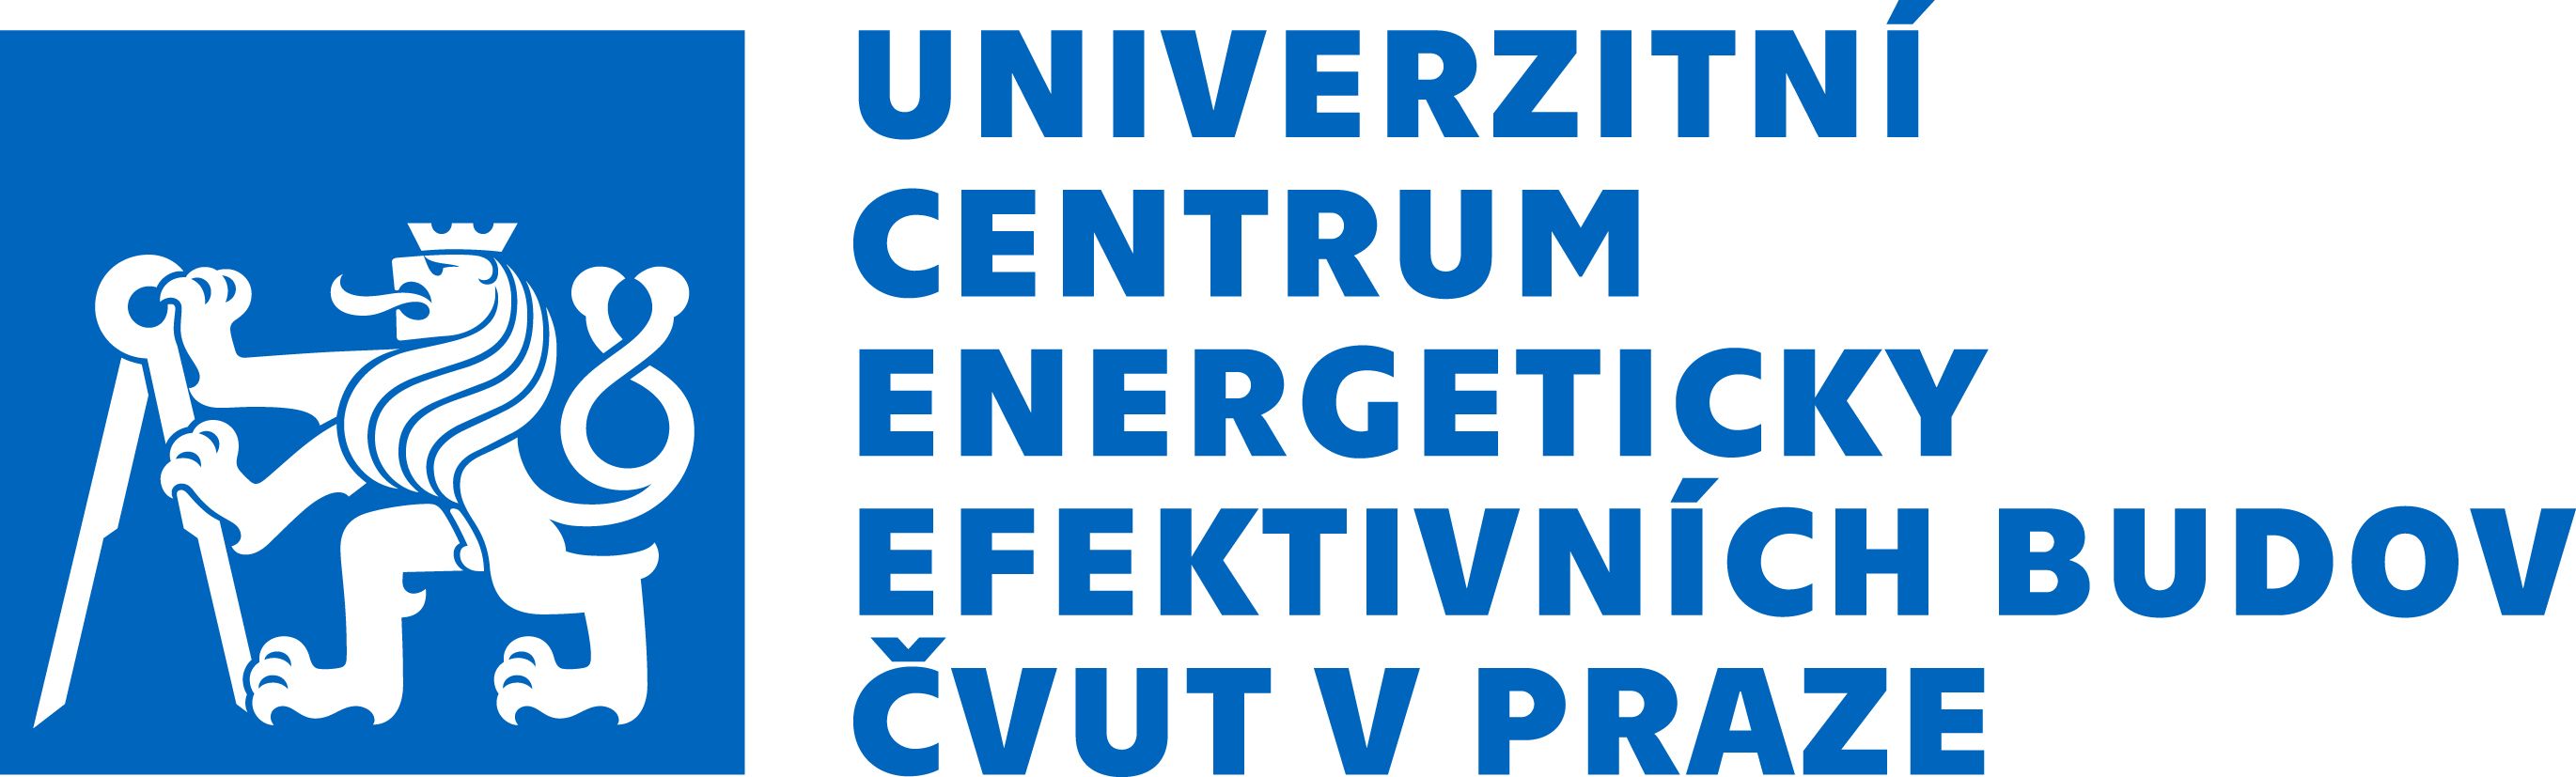 Univerzitní centrum energeticky efektivních budov logo